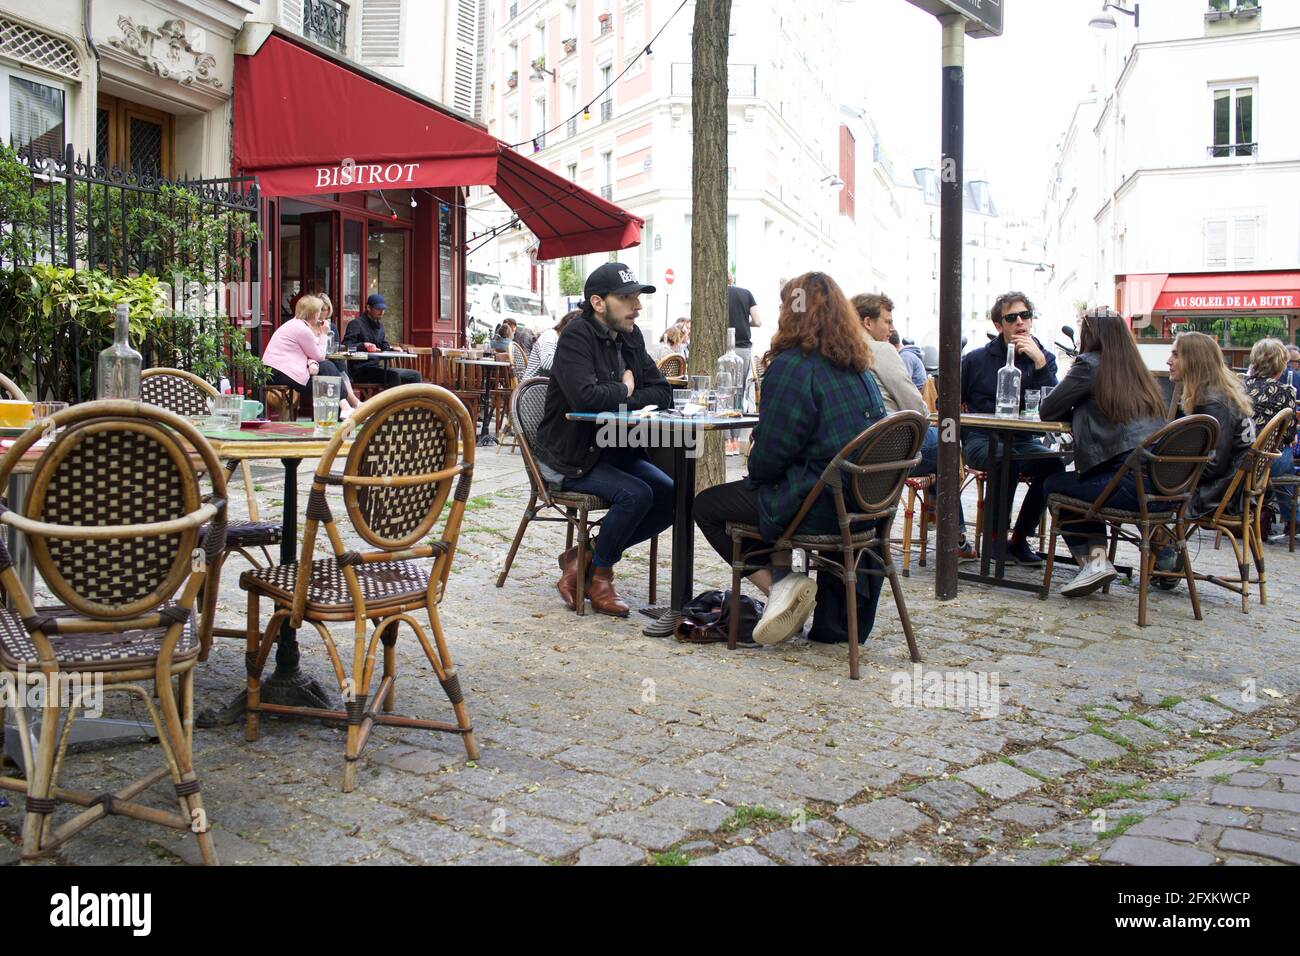 I parigini gusteranno un drink su una terrazza Bistrot, una delle tante terrazze ora aperte al pubblico dopo che le restrizioni di blocco di Covid-19 sono state attenuate - Place Paul Albert, 75018, Parigi, Francia. Maggio 2021. Foto Stock